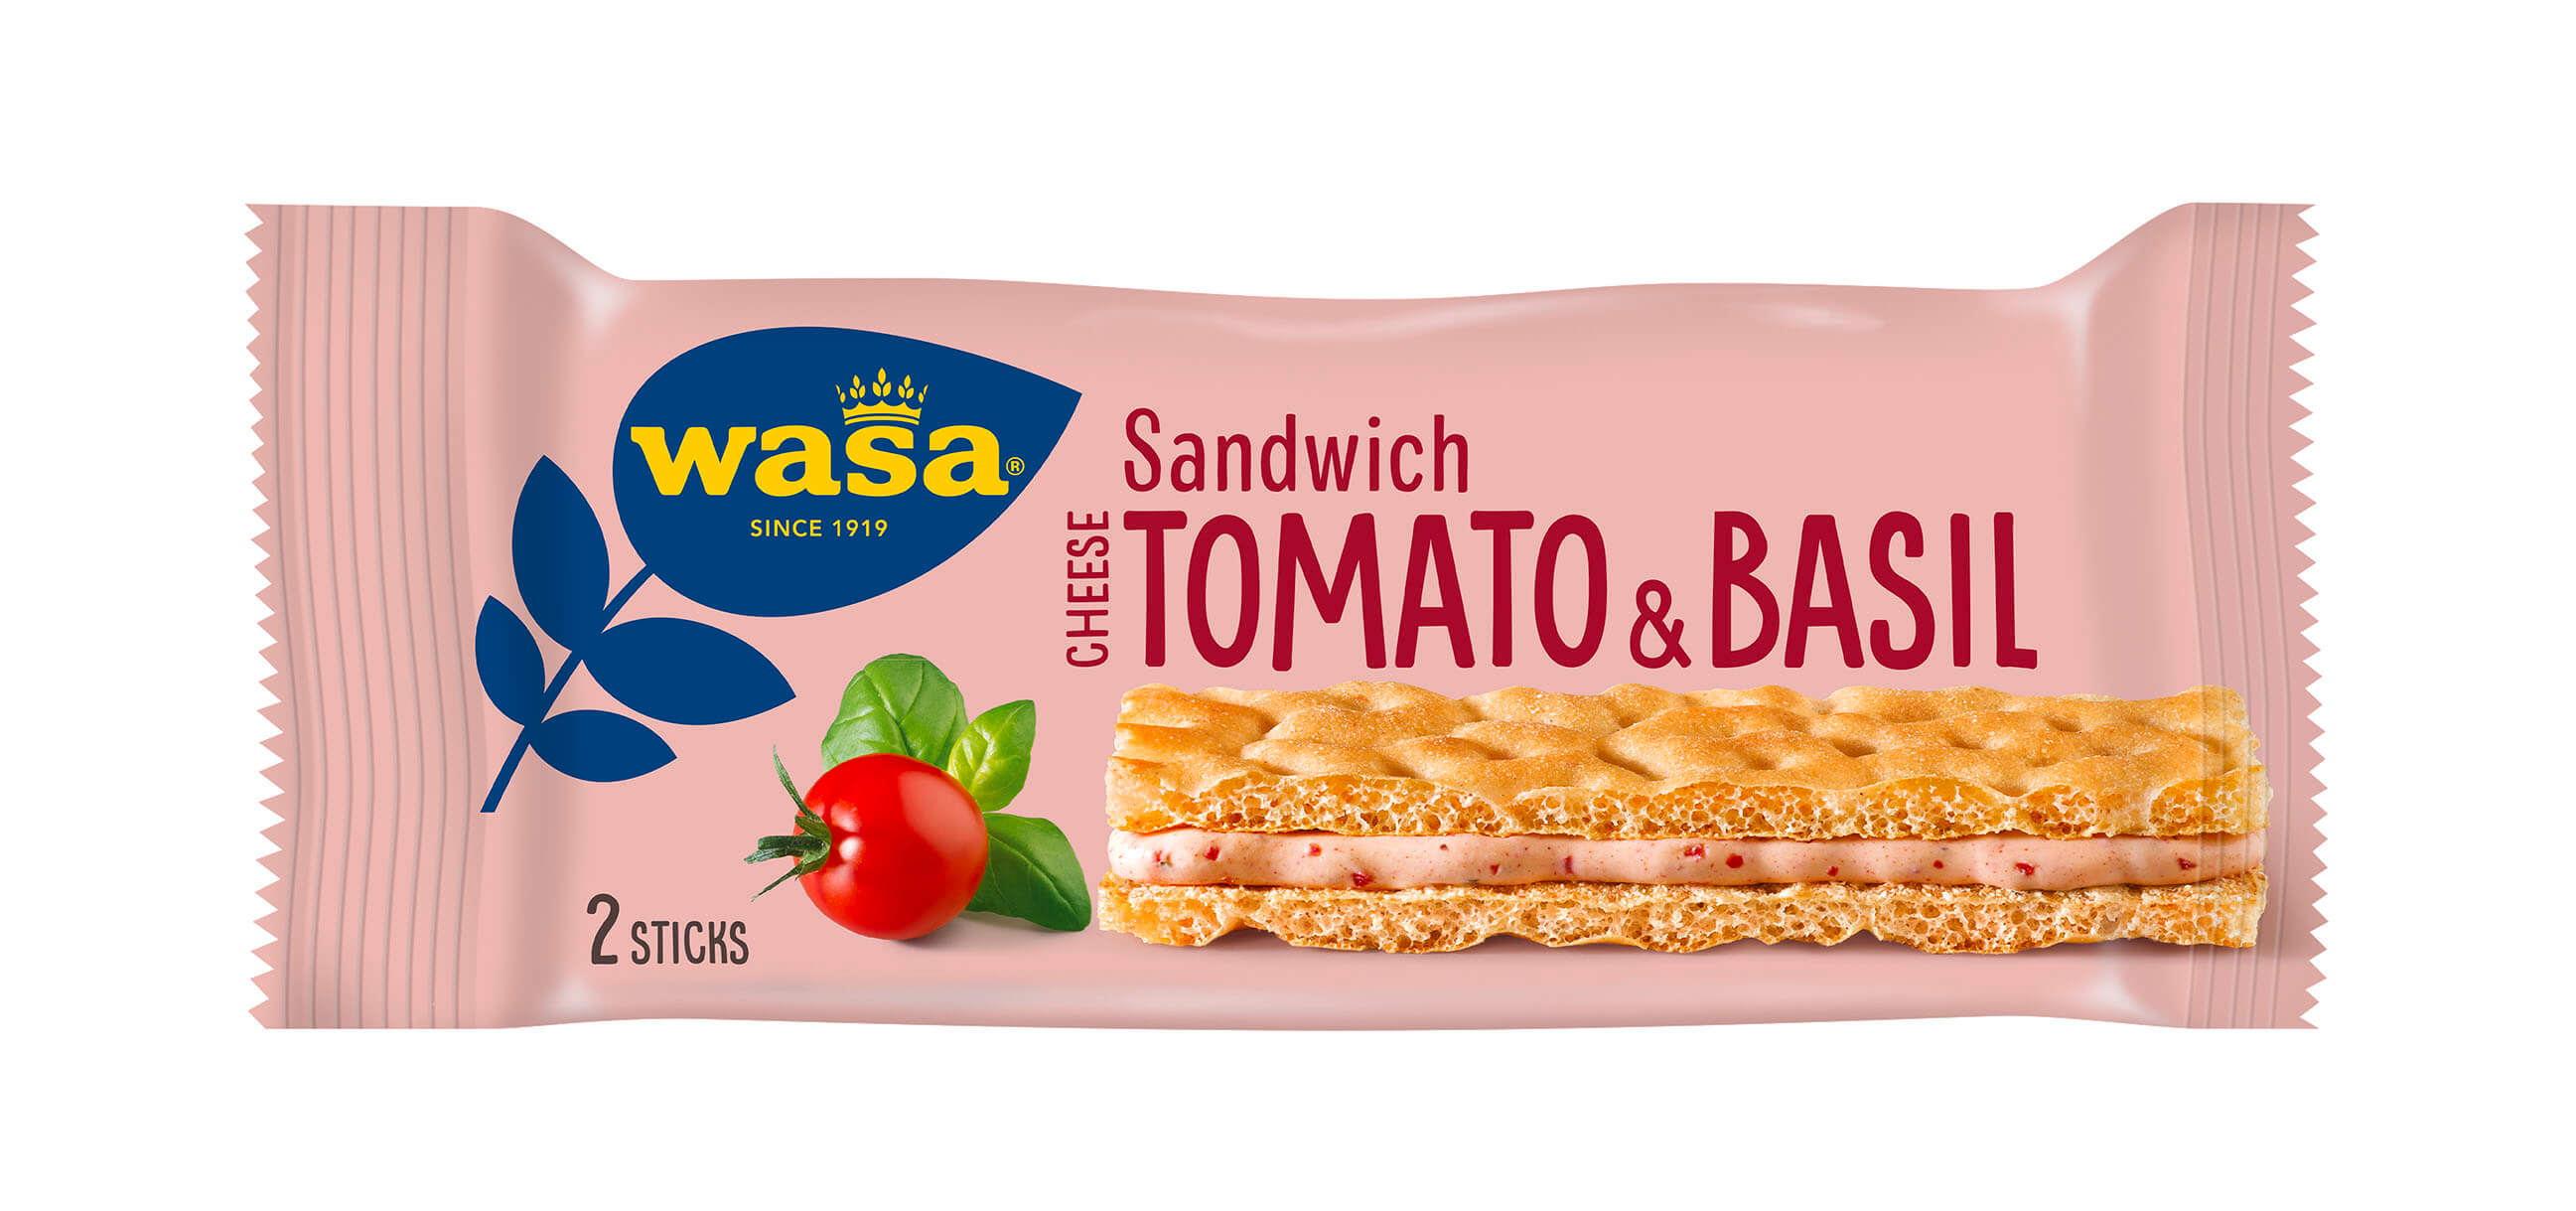 Wasa Sandwich Tomato & Basil - Upptäck det perfekta mellanmålet, gott knäckebröd med krämig fyllning. Utmärkt som ett lätt mellanmål på språng och som tips på mellanmål till jobbet, efter skolan eller innan träning.